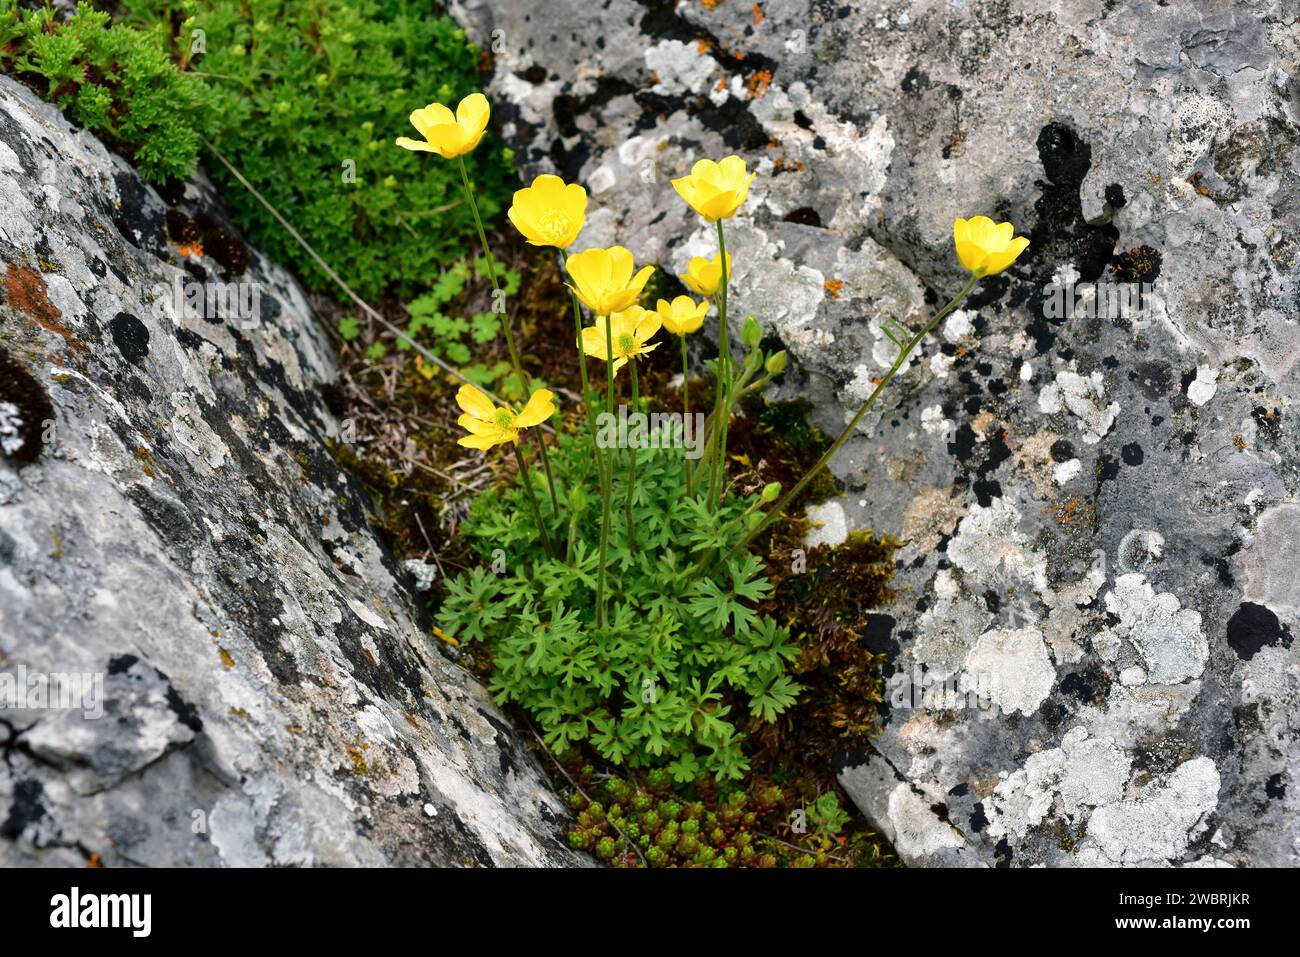 Boton de oro (Ranunculus ollissiponensis) ist ein mehrjähriges Kraut, das auf der zentralen iberischen Halbinsel beheimatet ist. Dieses Foto wurde in Babia, Provinz Leon, Casti aufgenommen Stockfoto